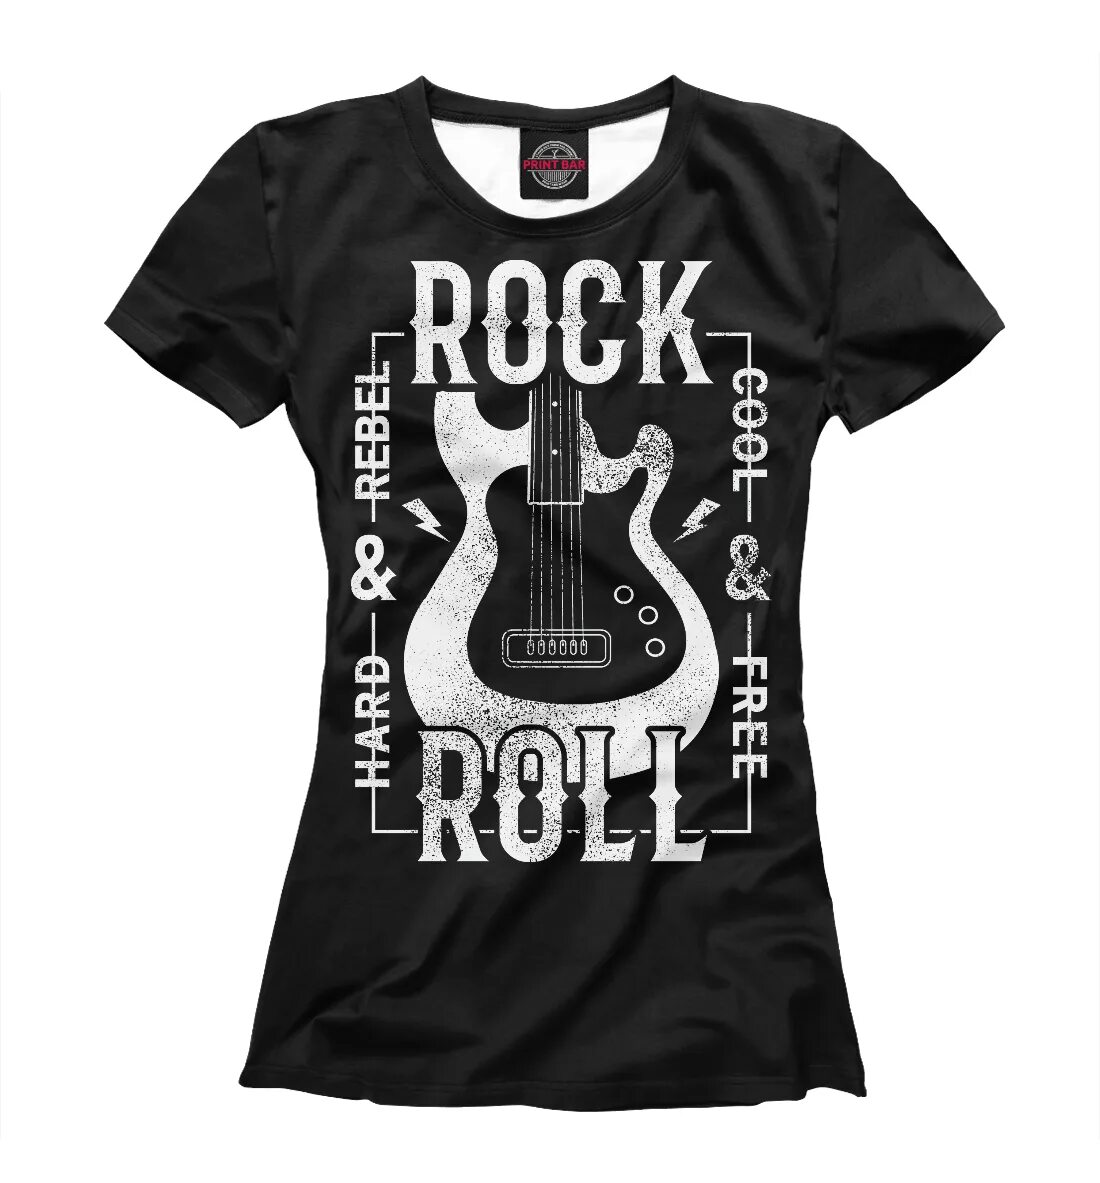 Rock i roll. Befree футболка серая Rock n Roll. Футболки в стиле рок. Футболка с рок принтом. Футболка роки.